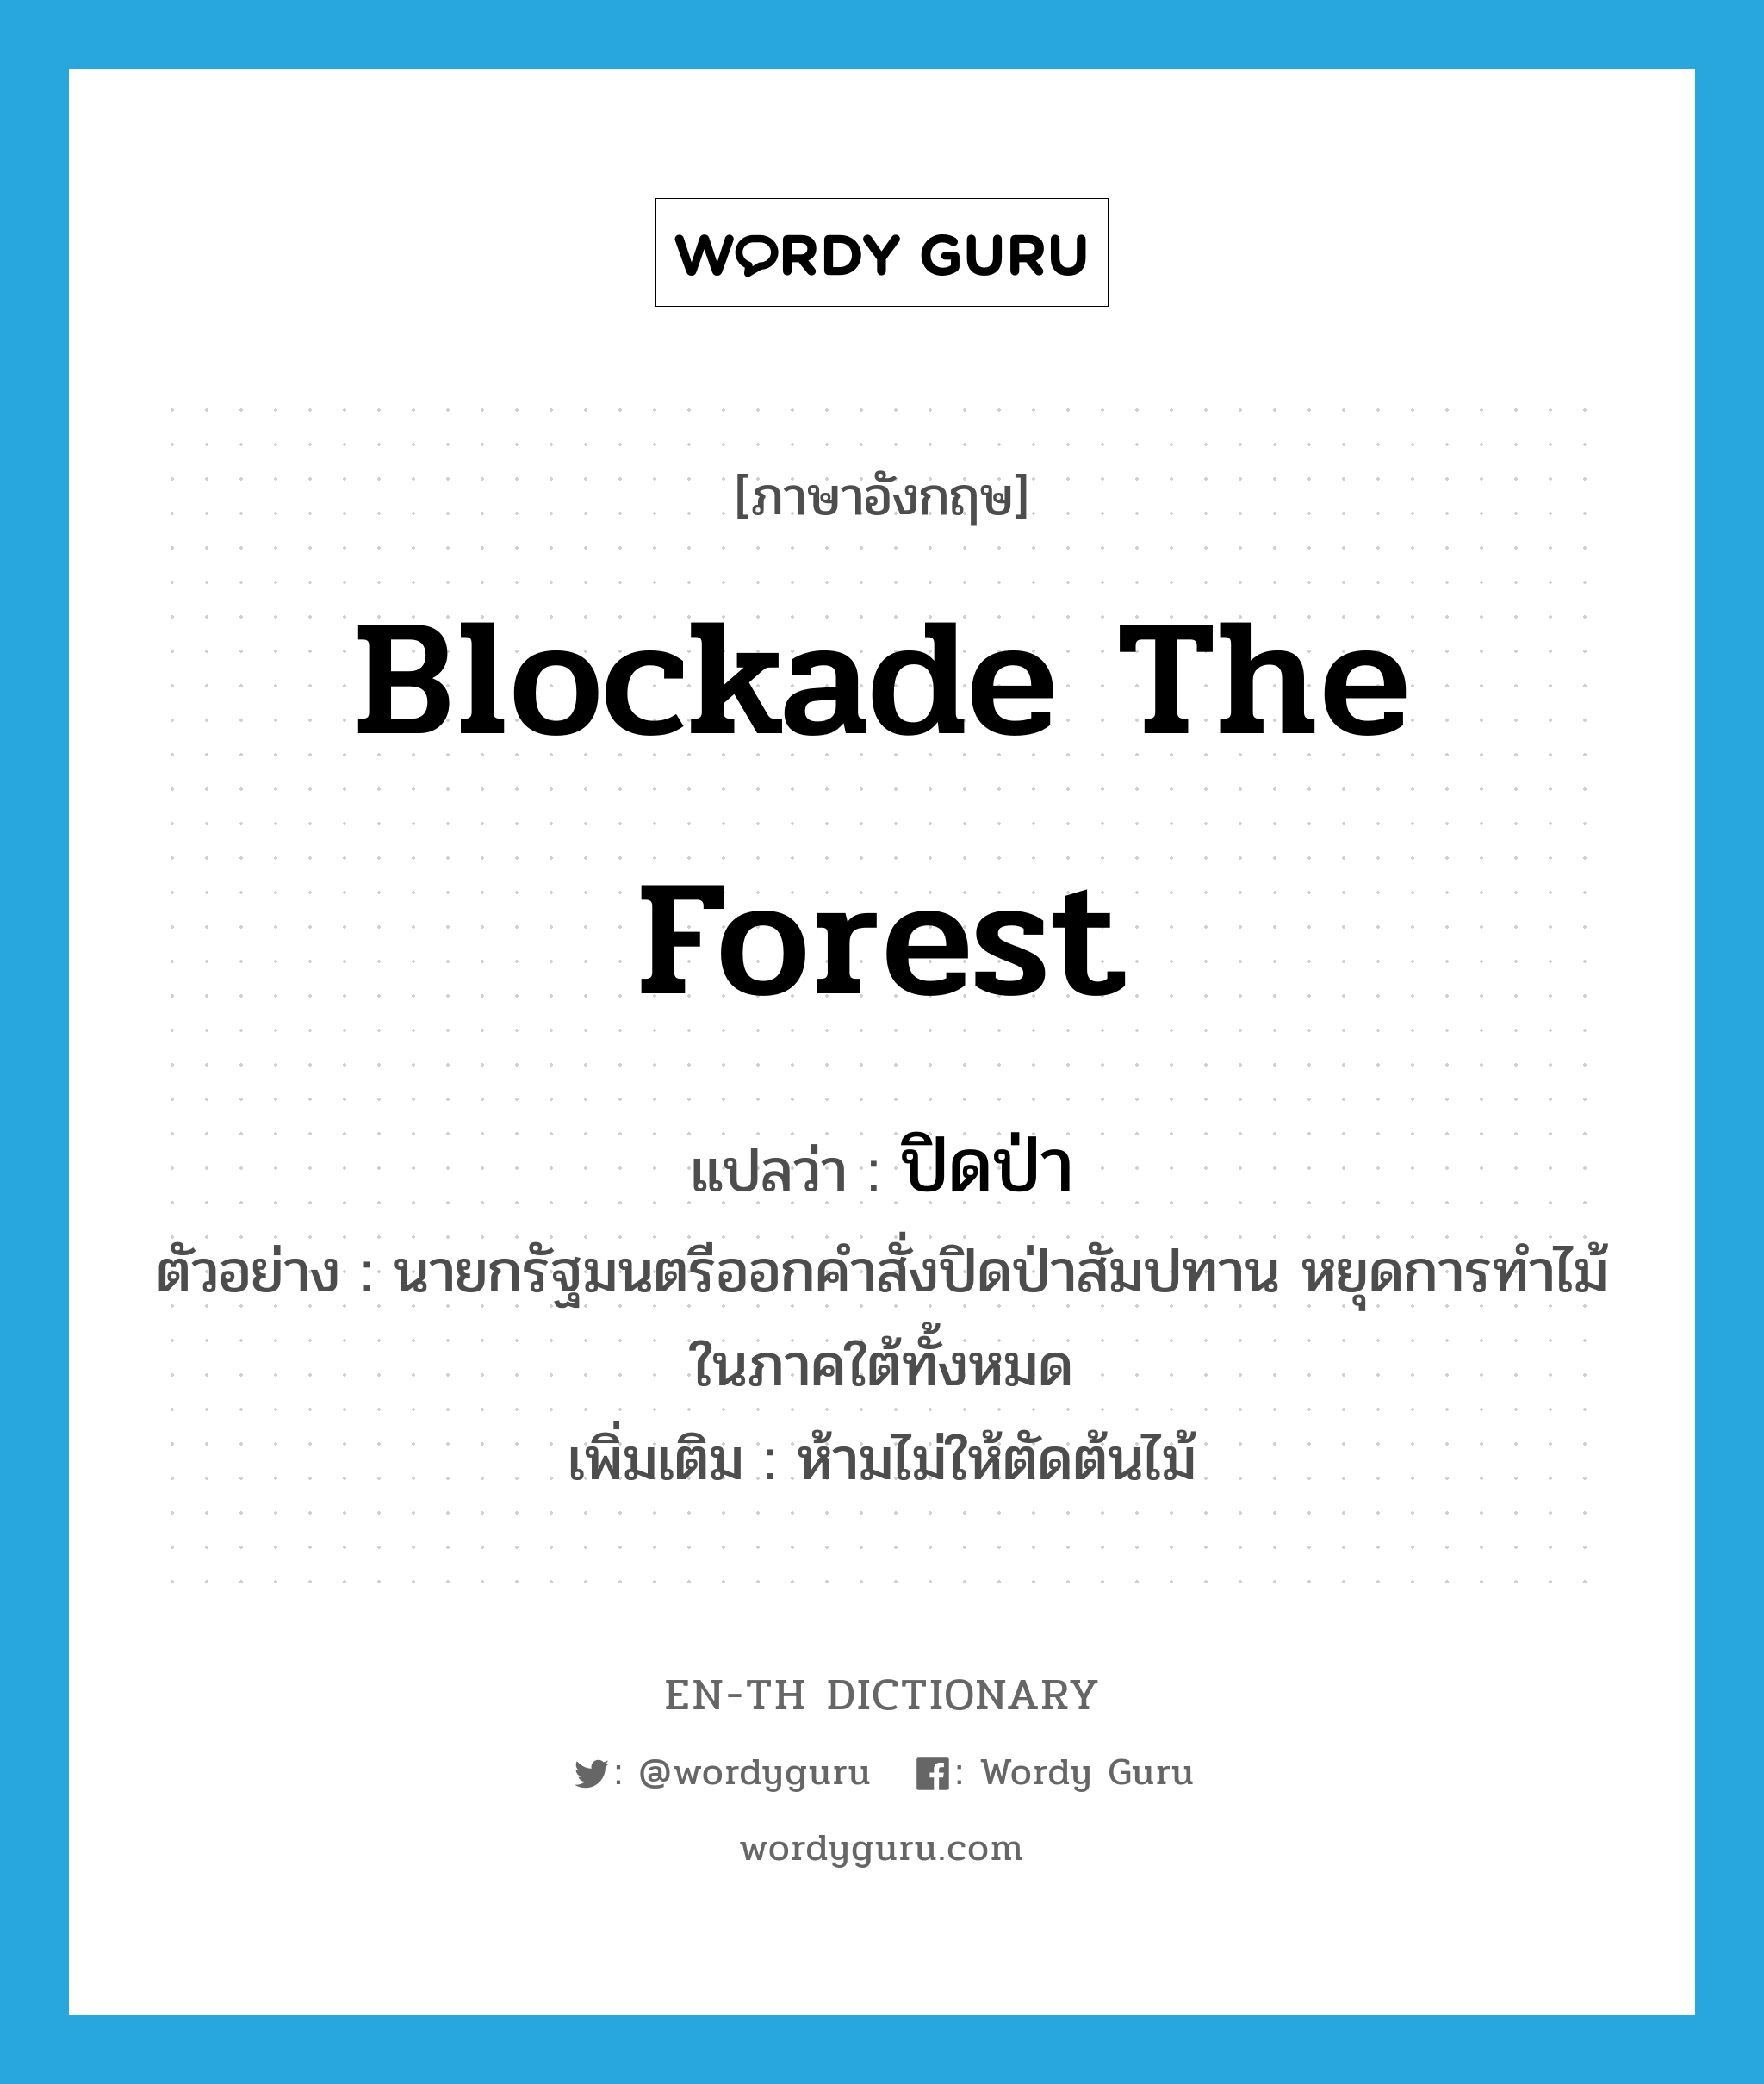 blockade the forest แปลว่า?, คำศัพท์ภาษาอังกฤษ blockade the forest แปลว่า ปิดป่า ประเภท V ตัวอย่าง นายกรัฐมนตรีออกคำสั่งปิดป่าสัมปทาน หยุดการทำไม้ในภาคใต้ทั้งหมด เพิ่มเติม ห้ามไม่ให้ตัดต้นไม้ หมวด V